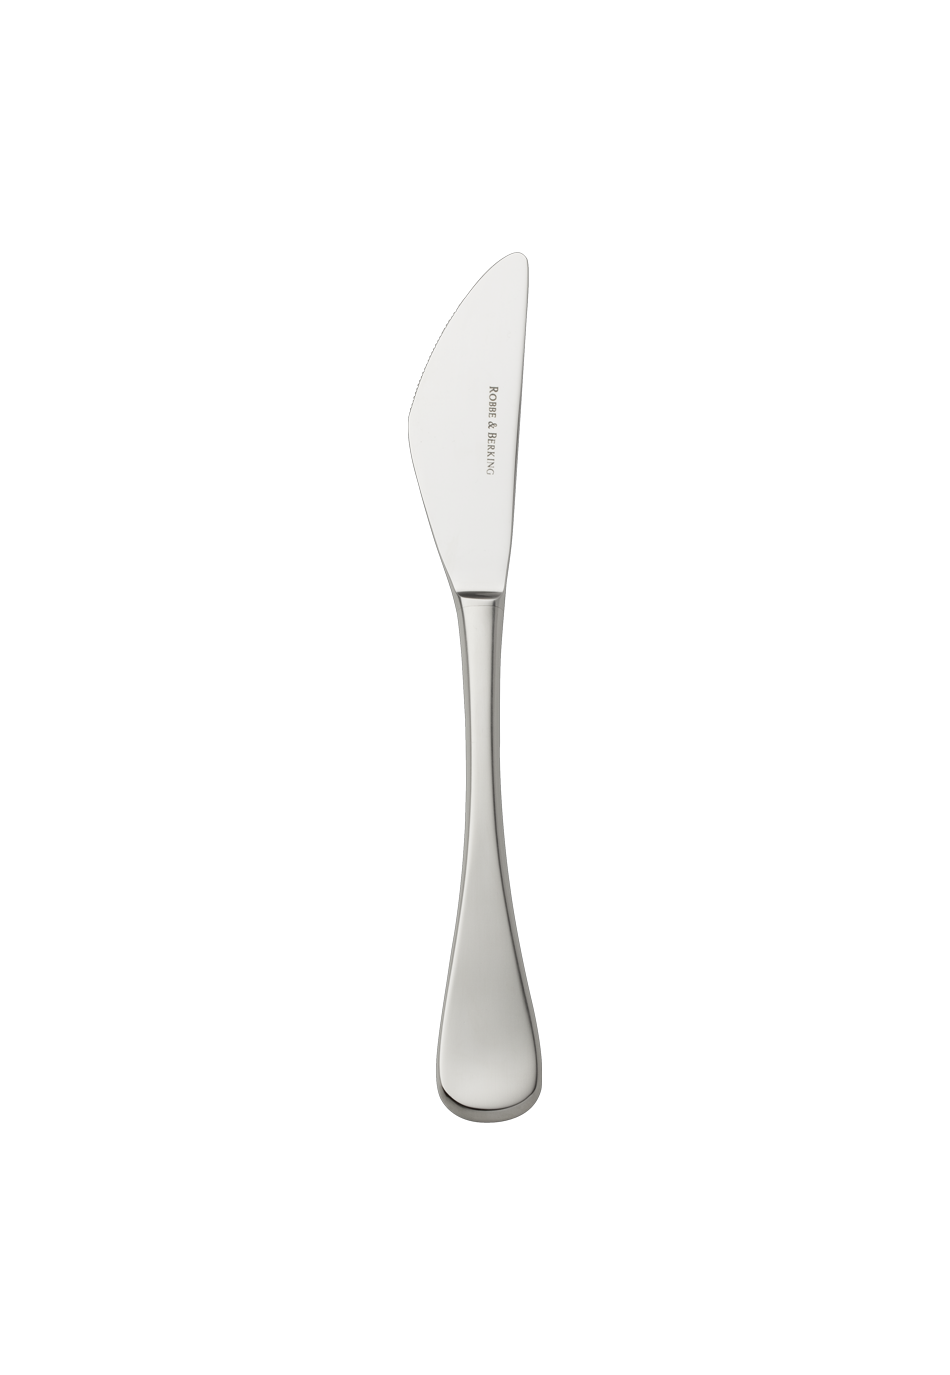 Scandia Dessert Knife (18/8 stainless steel)